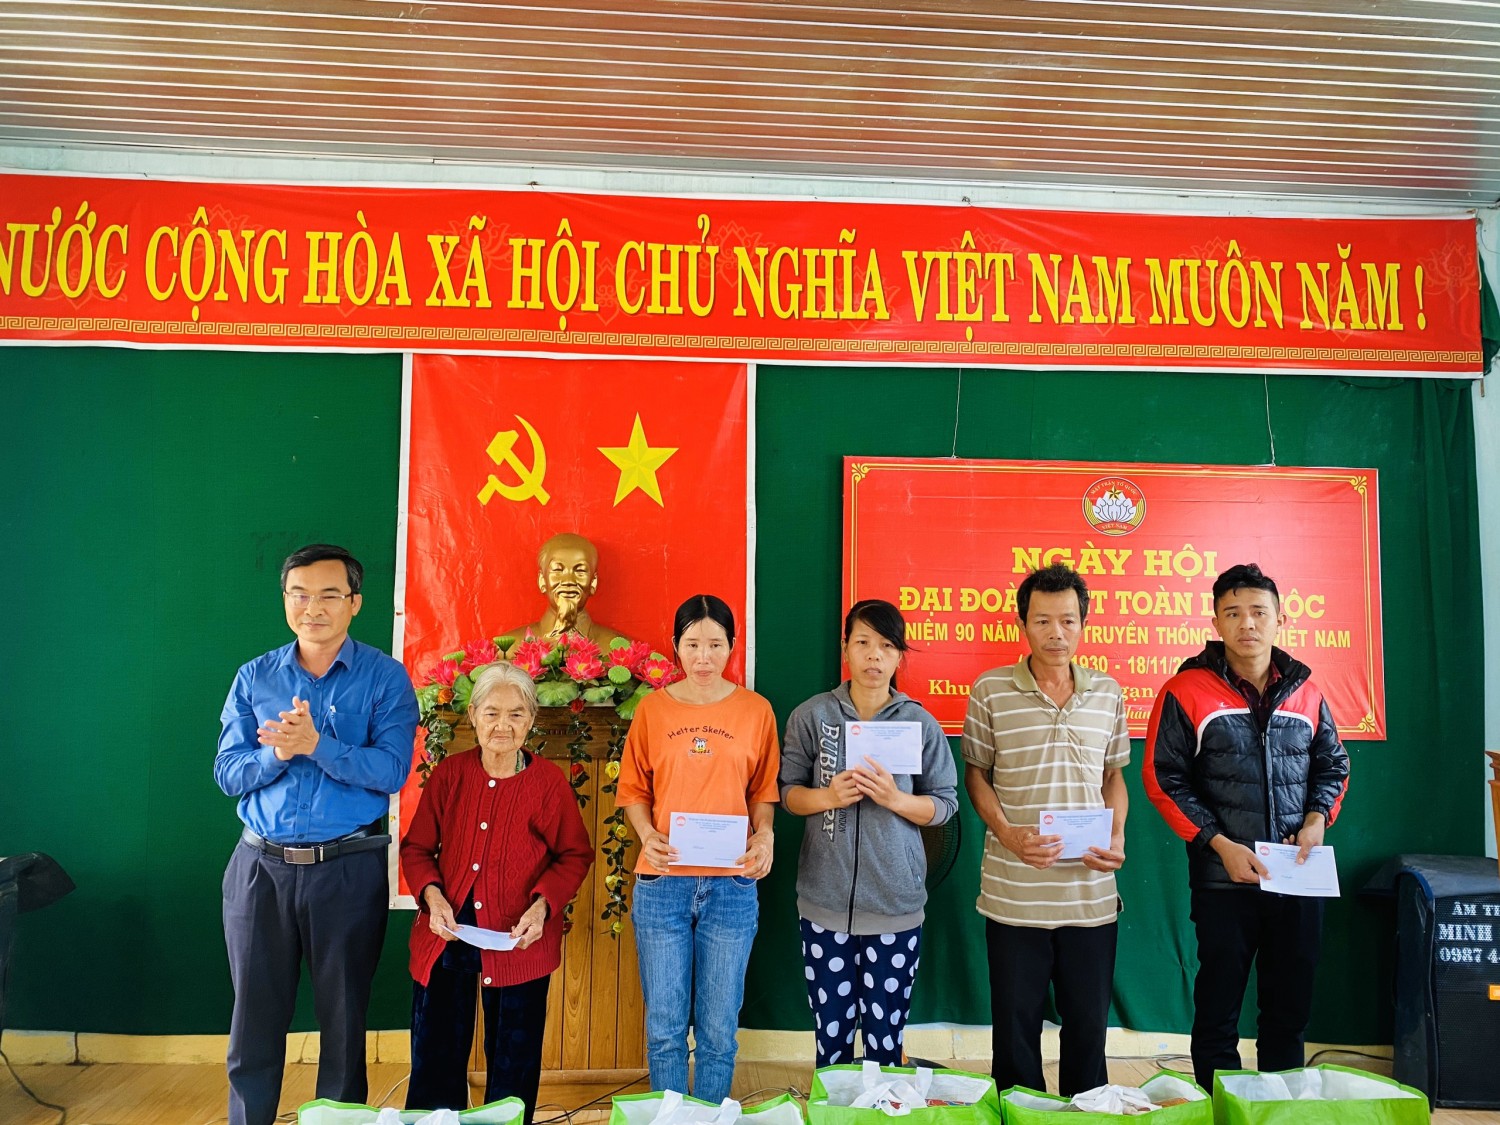 Đồng chí Nguyễn Phi Hùng, Phó Chủ tịch UBMTTQVN tỉnh trao quà cho các hộ gia đình nghèo